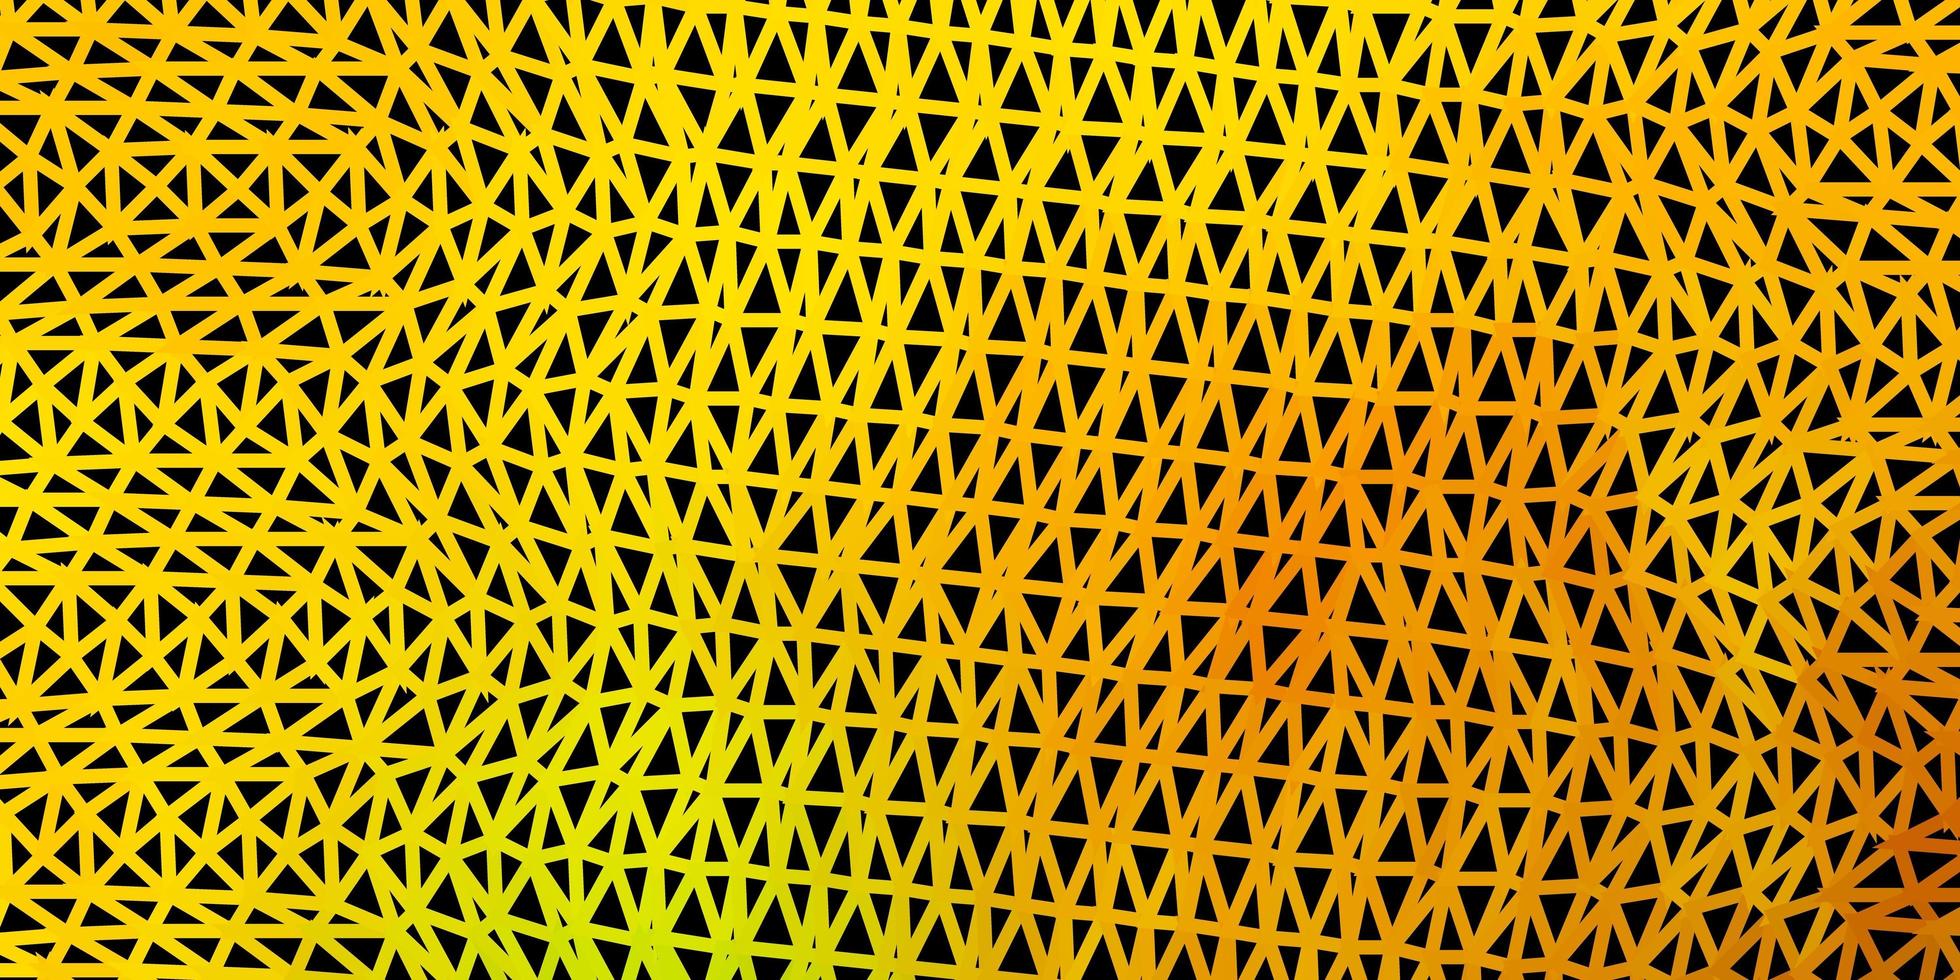 padrão de triângulo abstrato de vetor verde escuro e amarelo.